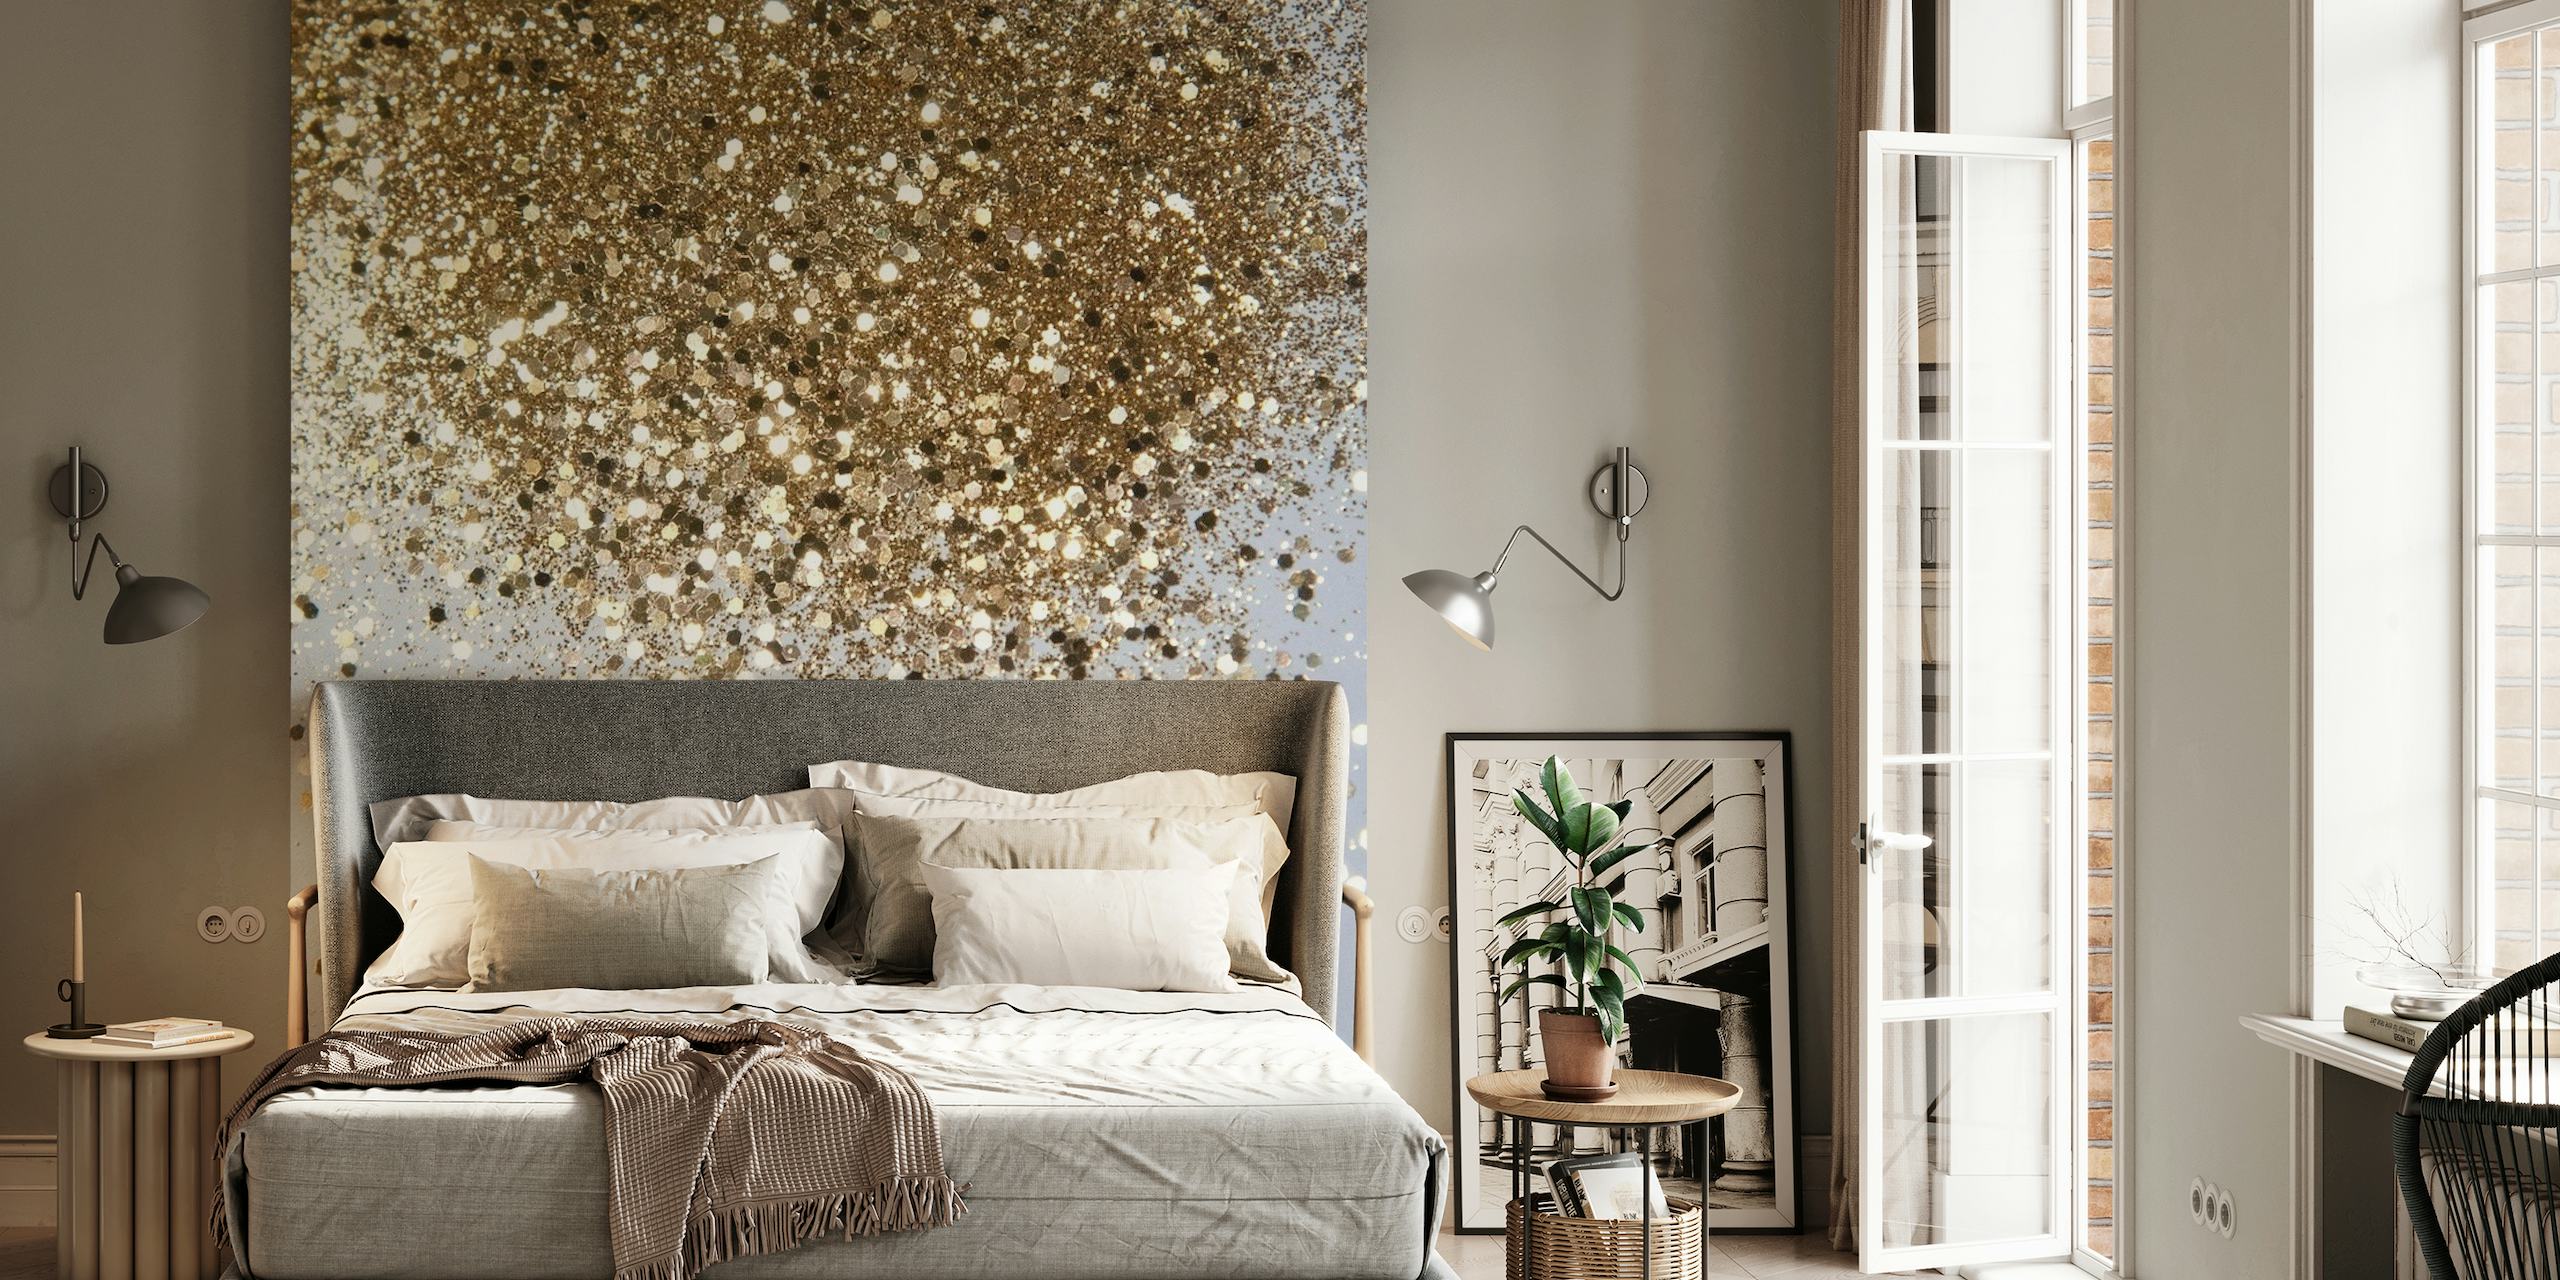 Fotomural vinílico de parede cintilante com glitter dourado para uma decoração elegante